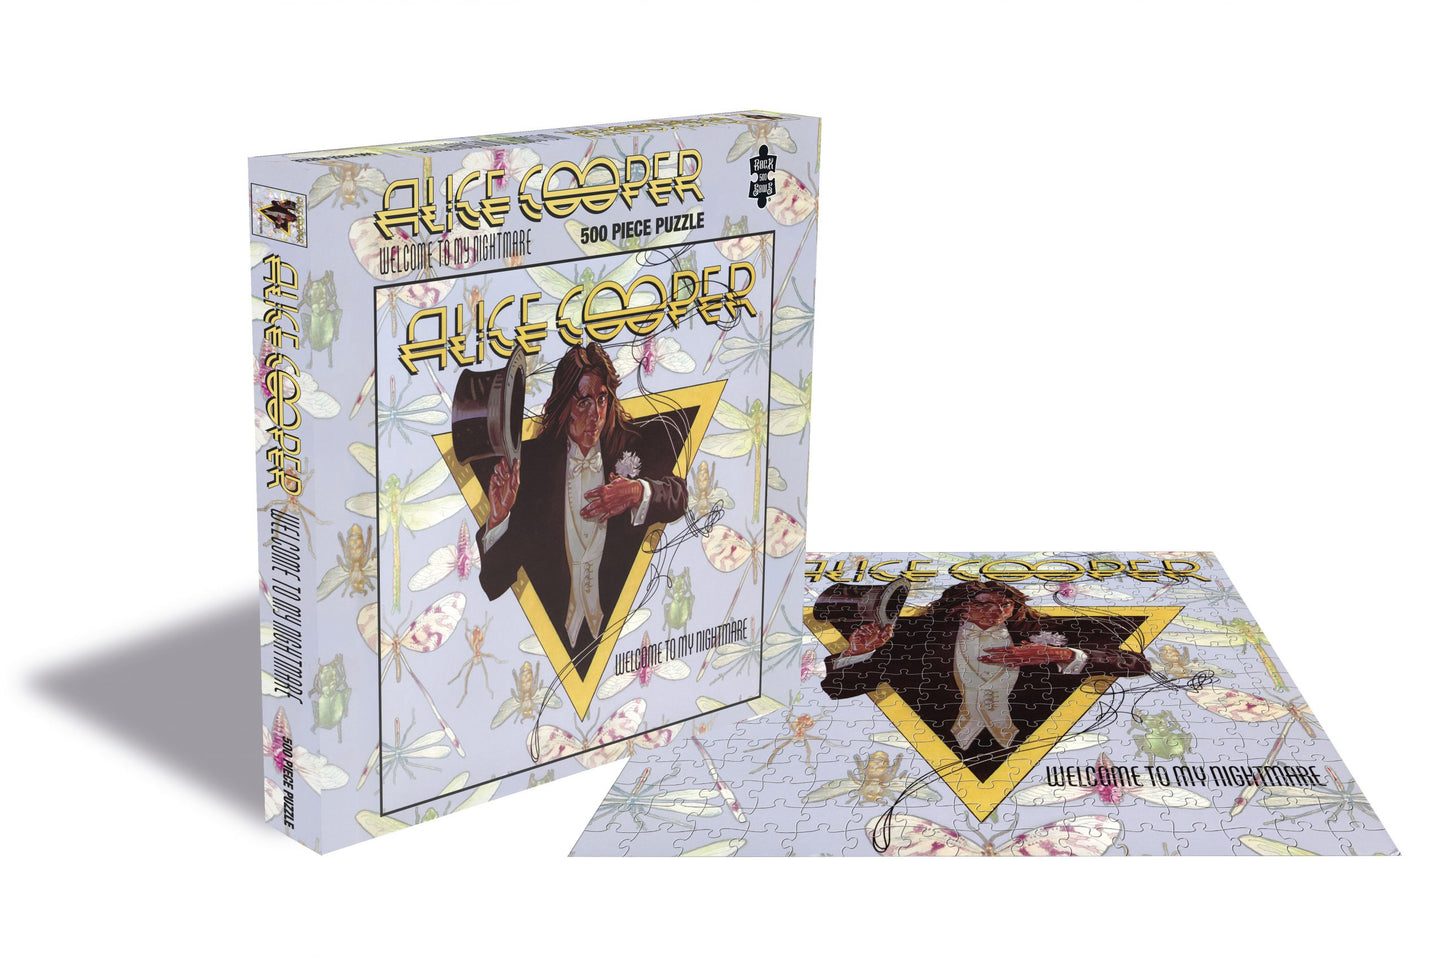 Alice Cooper - Welkom bij mijn nachtmerrie, puzzel van 500 stukjes